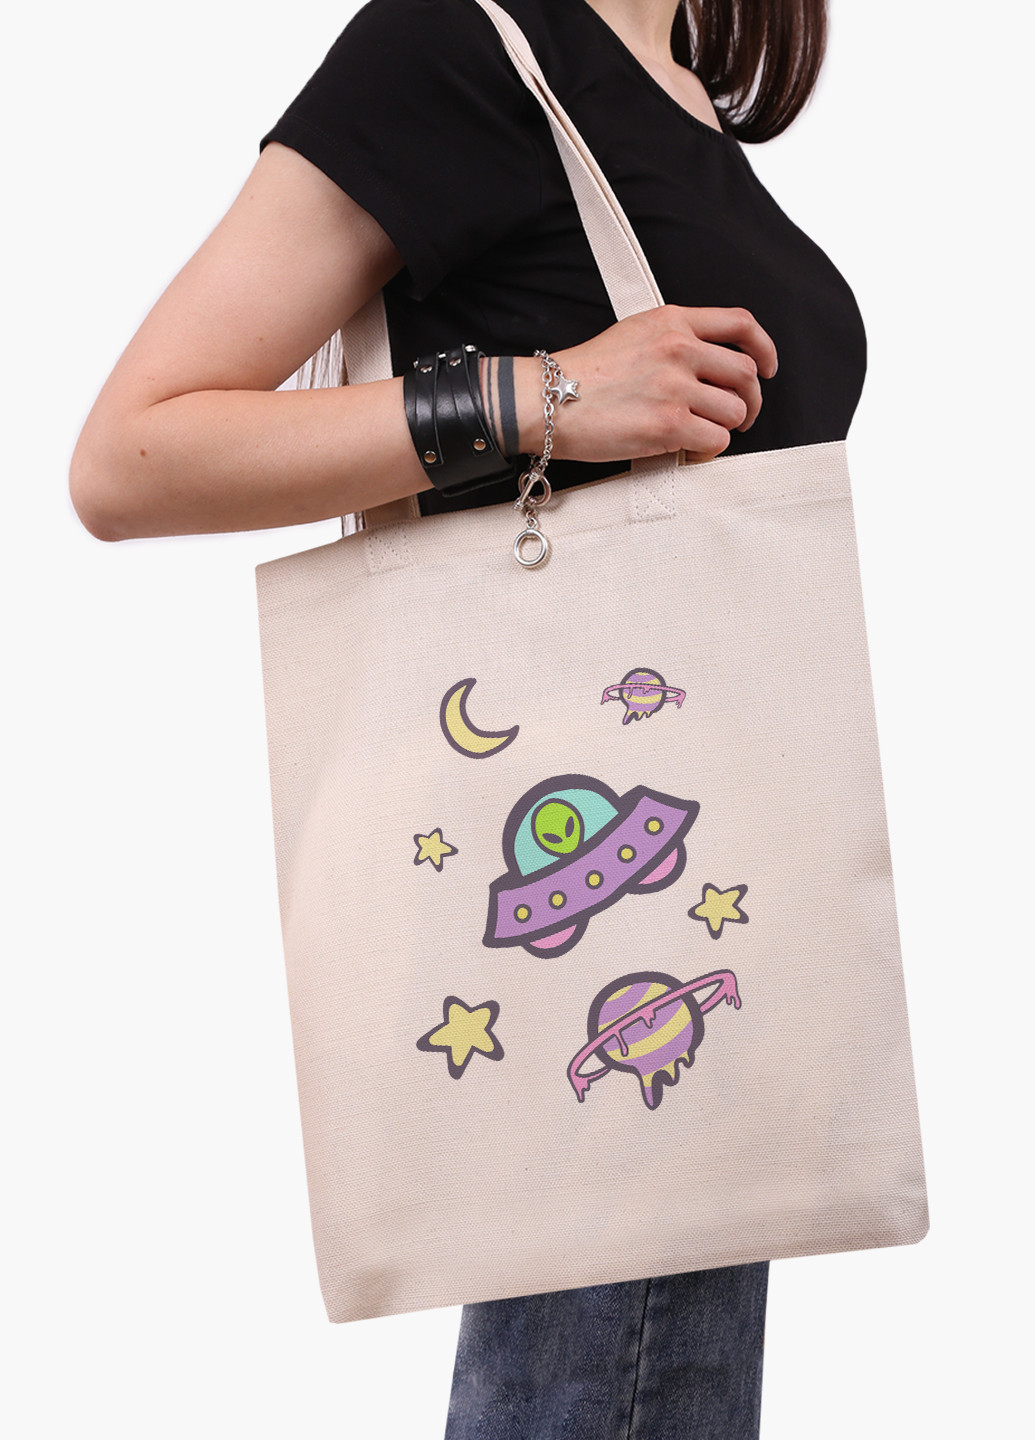 Еко сумка шоппер біла Інопланетяни в космосі (Aliens in space) (9227-2854-WT-1) Еко сумка шоппер біла 41*35 см MobiPrint (221683045)